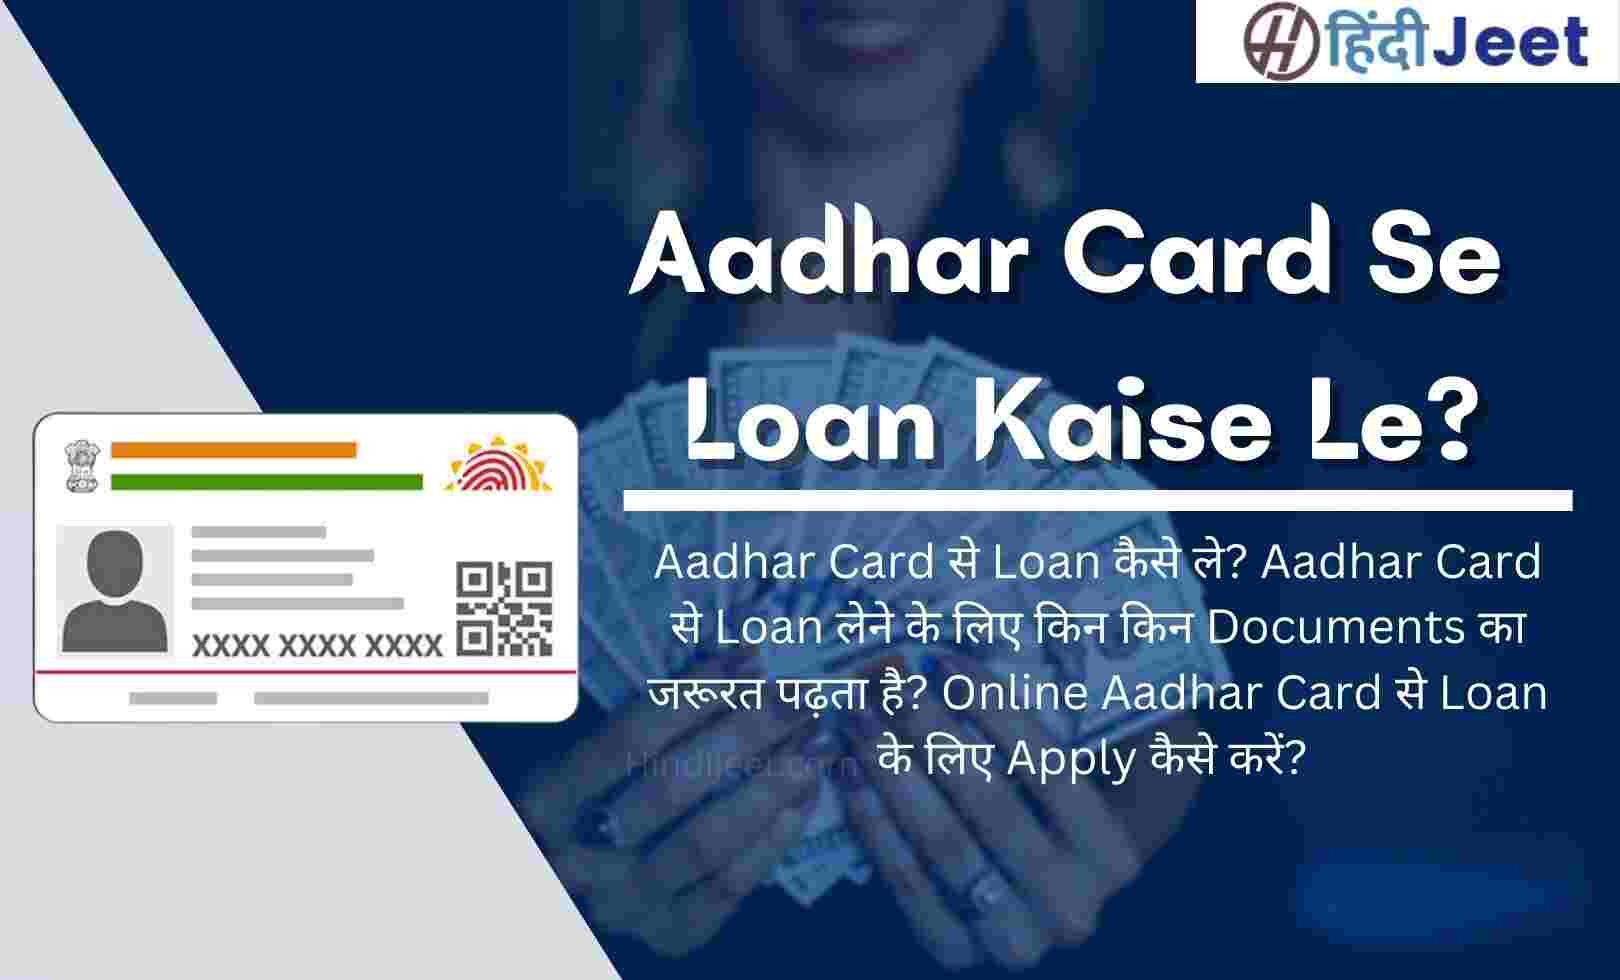 Aadhar Card Se Loan Kaise Le 